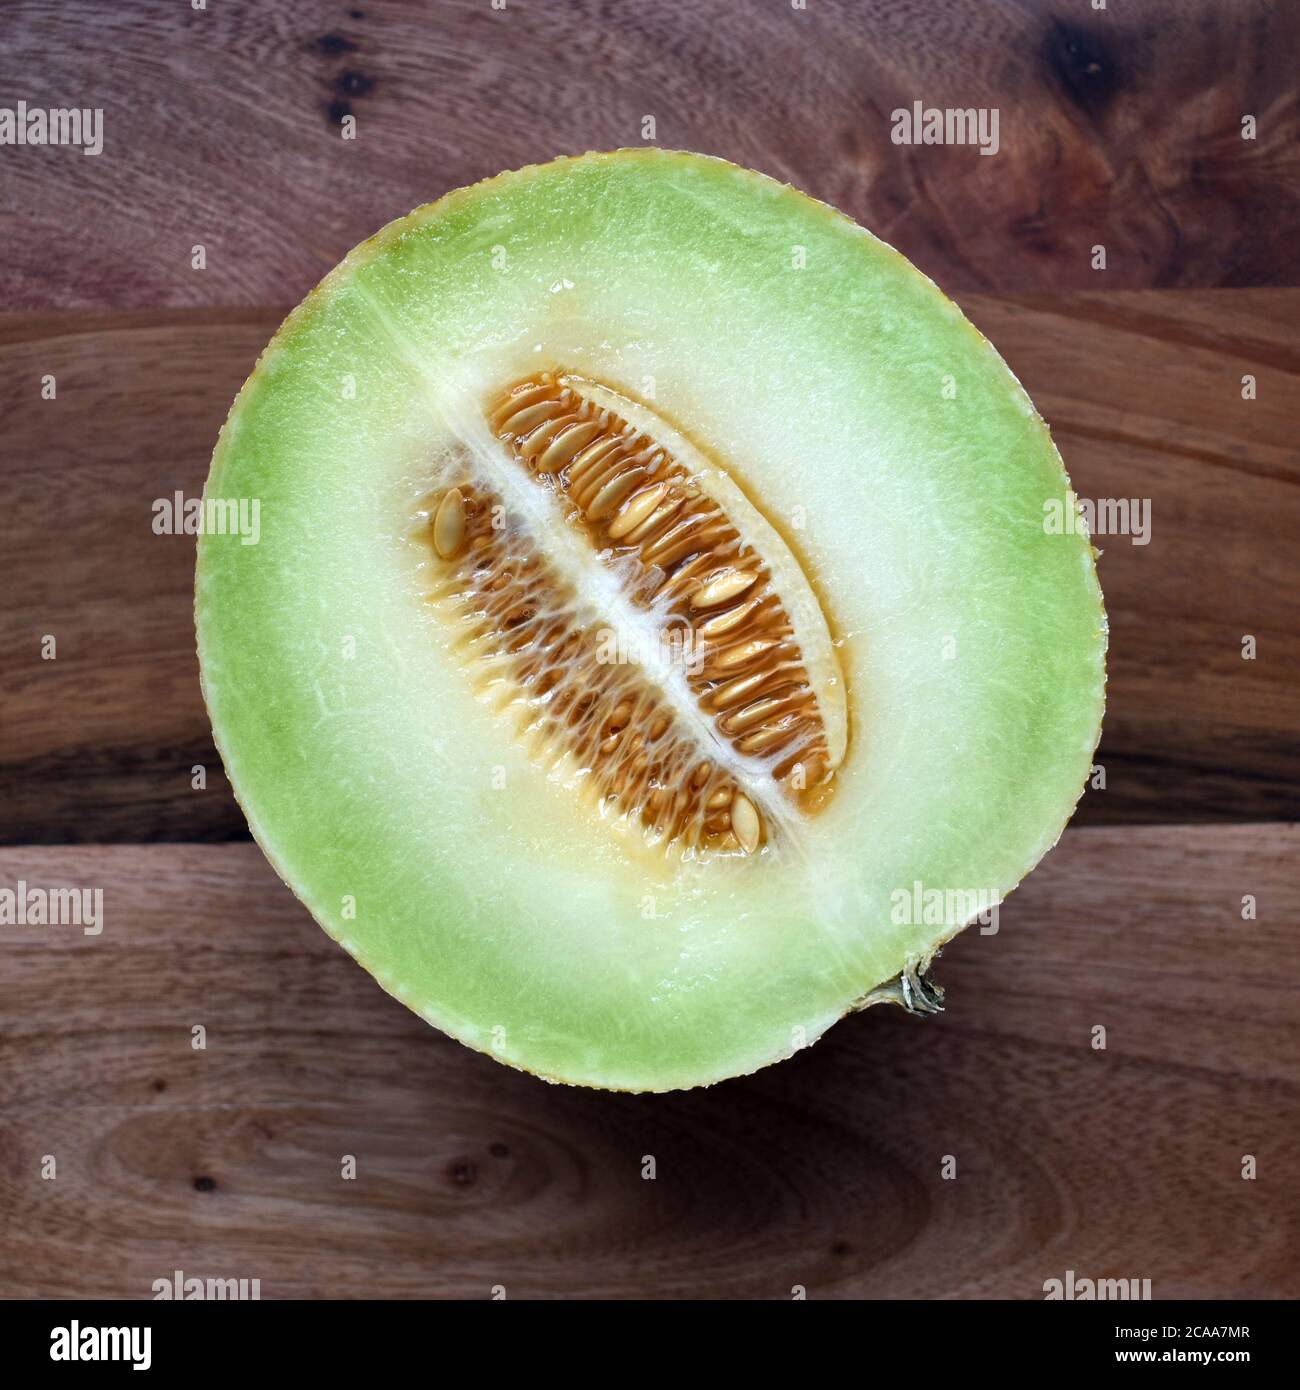 La frutta fresca di melone di Galia ha dimezzato la fotografia che mostra i semi e la carne su uno sfondo di legno sotto la luce naturale. Frutta appetitosa, invitante Foto Stock